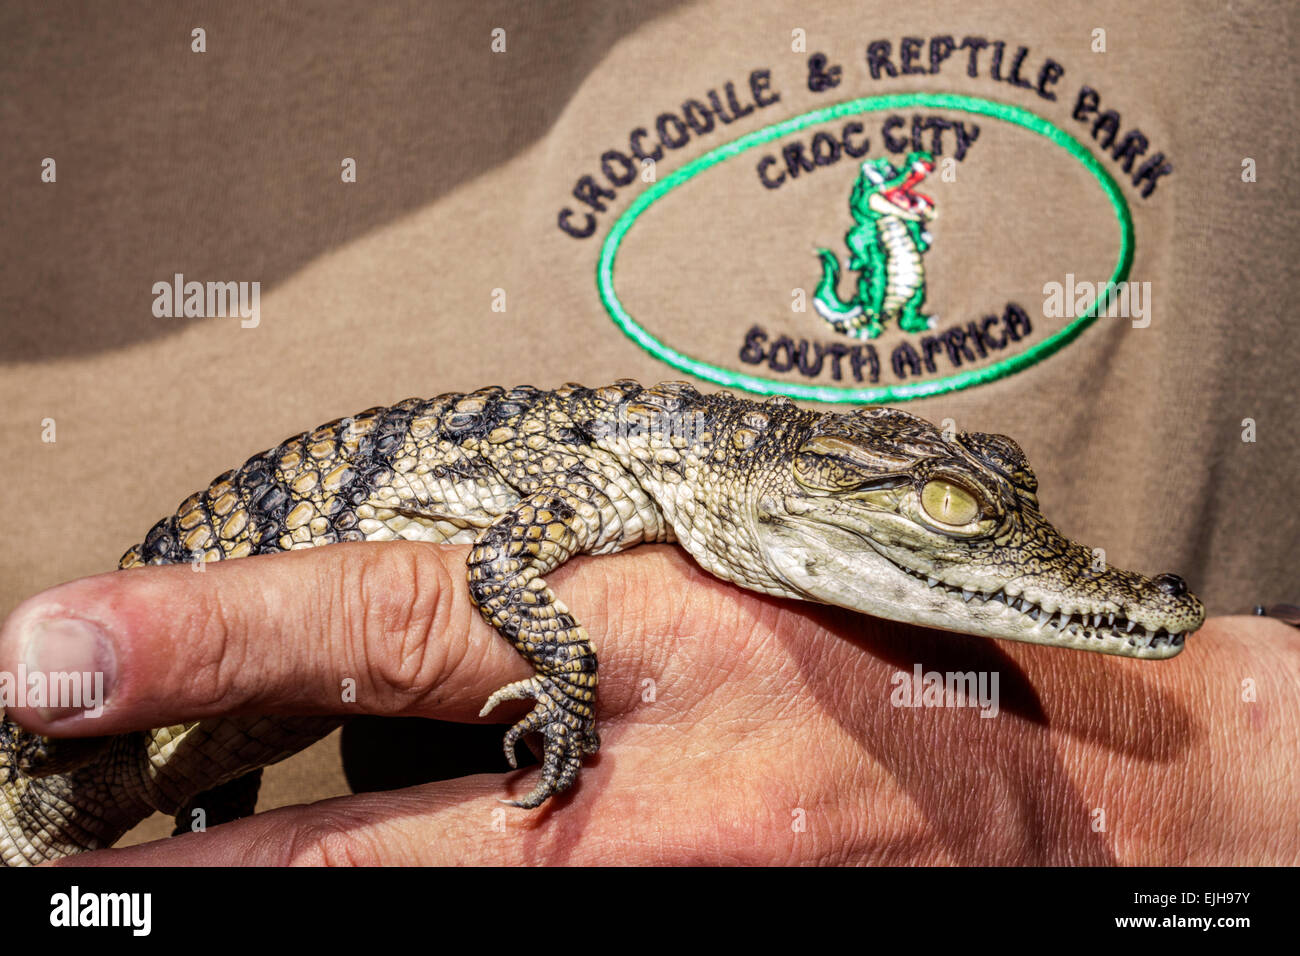 Johannesburg Afrique du Sud, Croc City Crocodile & Reptile Park, ferme, bébés enfants enfants enfants, SAfri150305037 Banque D'Images